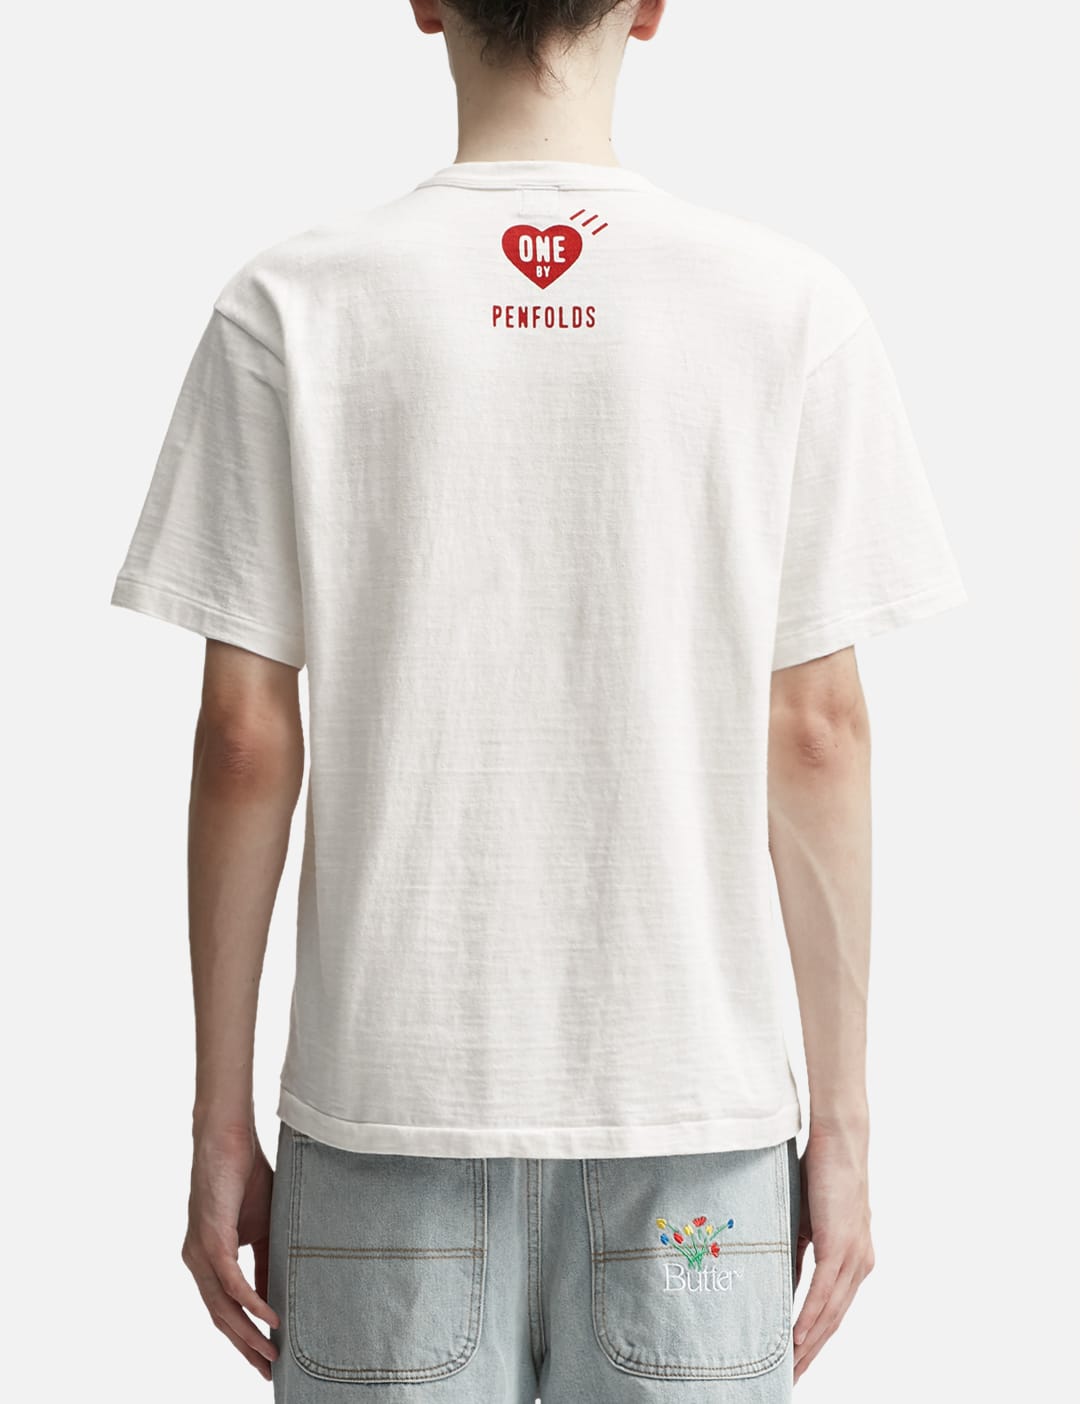 Human Made - ワン バイ ペンフォールズ パンダ Tシャツ | HBX